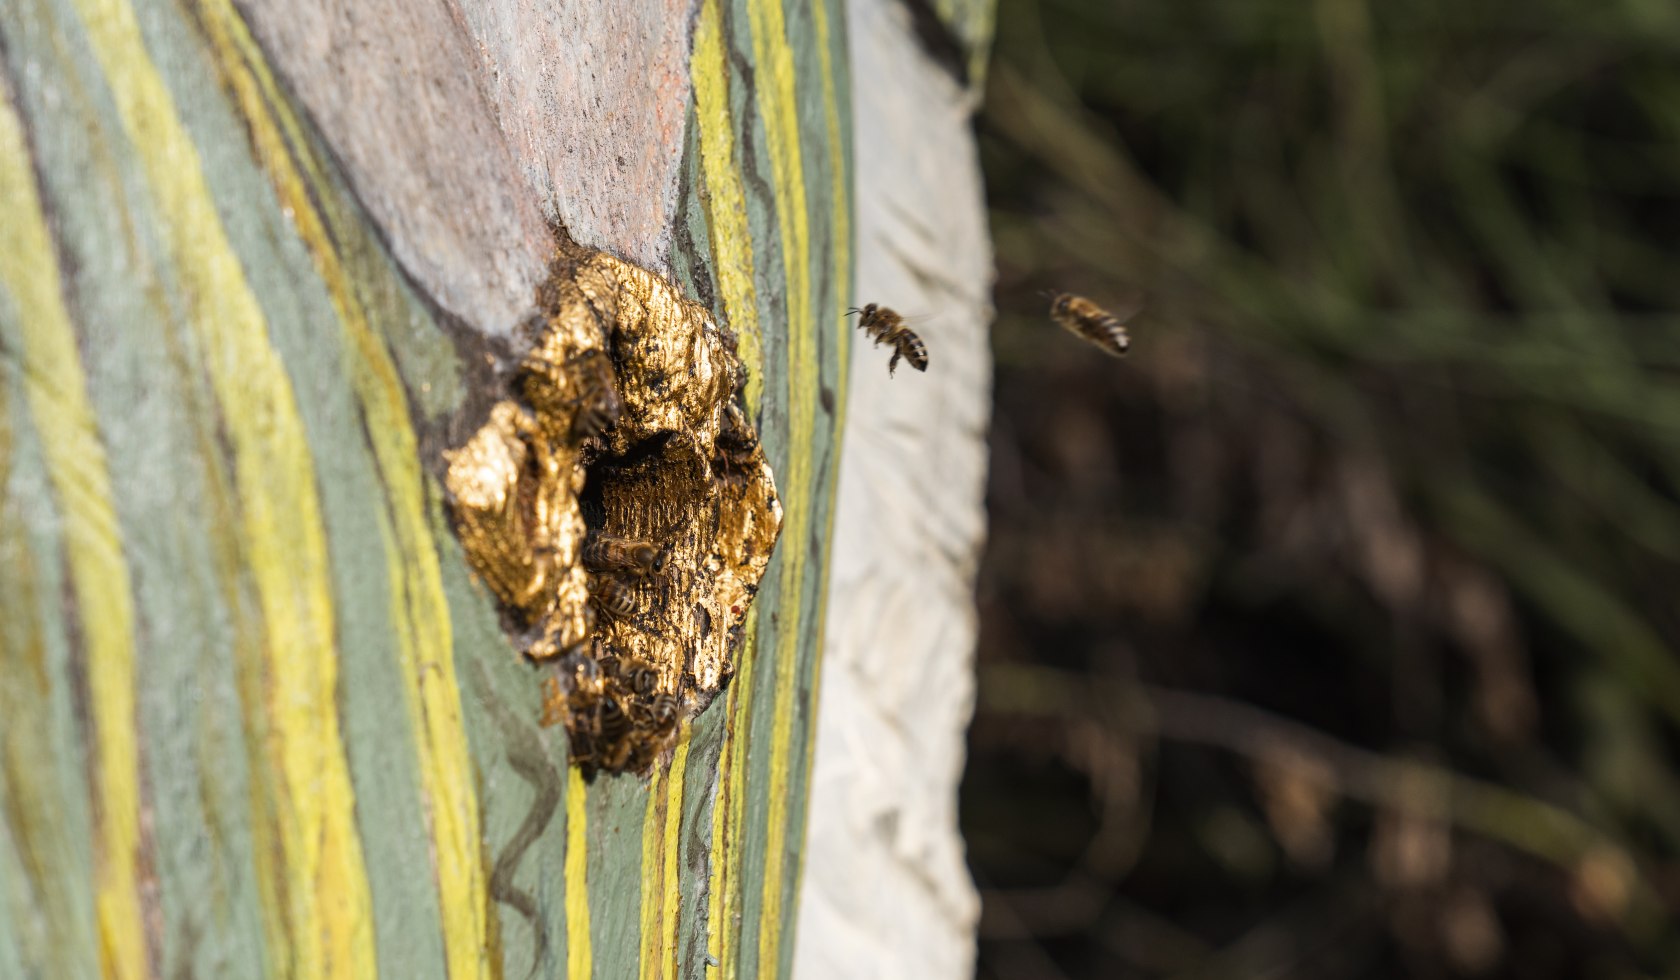 Figurenbeute mit Hohlraum als Rückzugsort für Bienen, © TourismusMarketing Niedersachsen GmbH